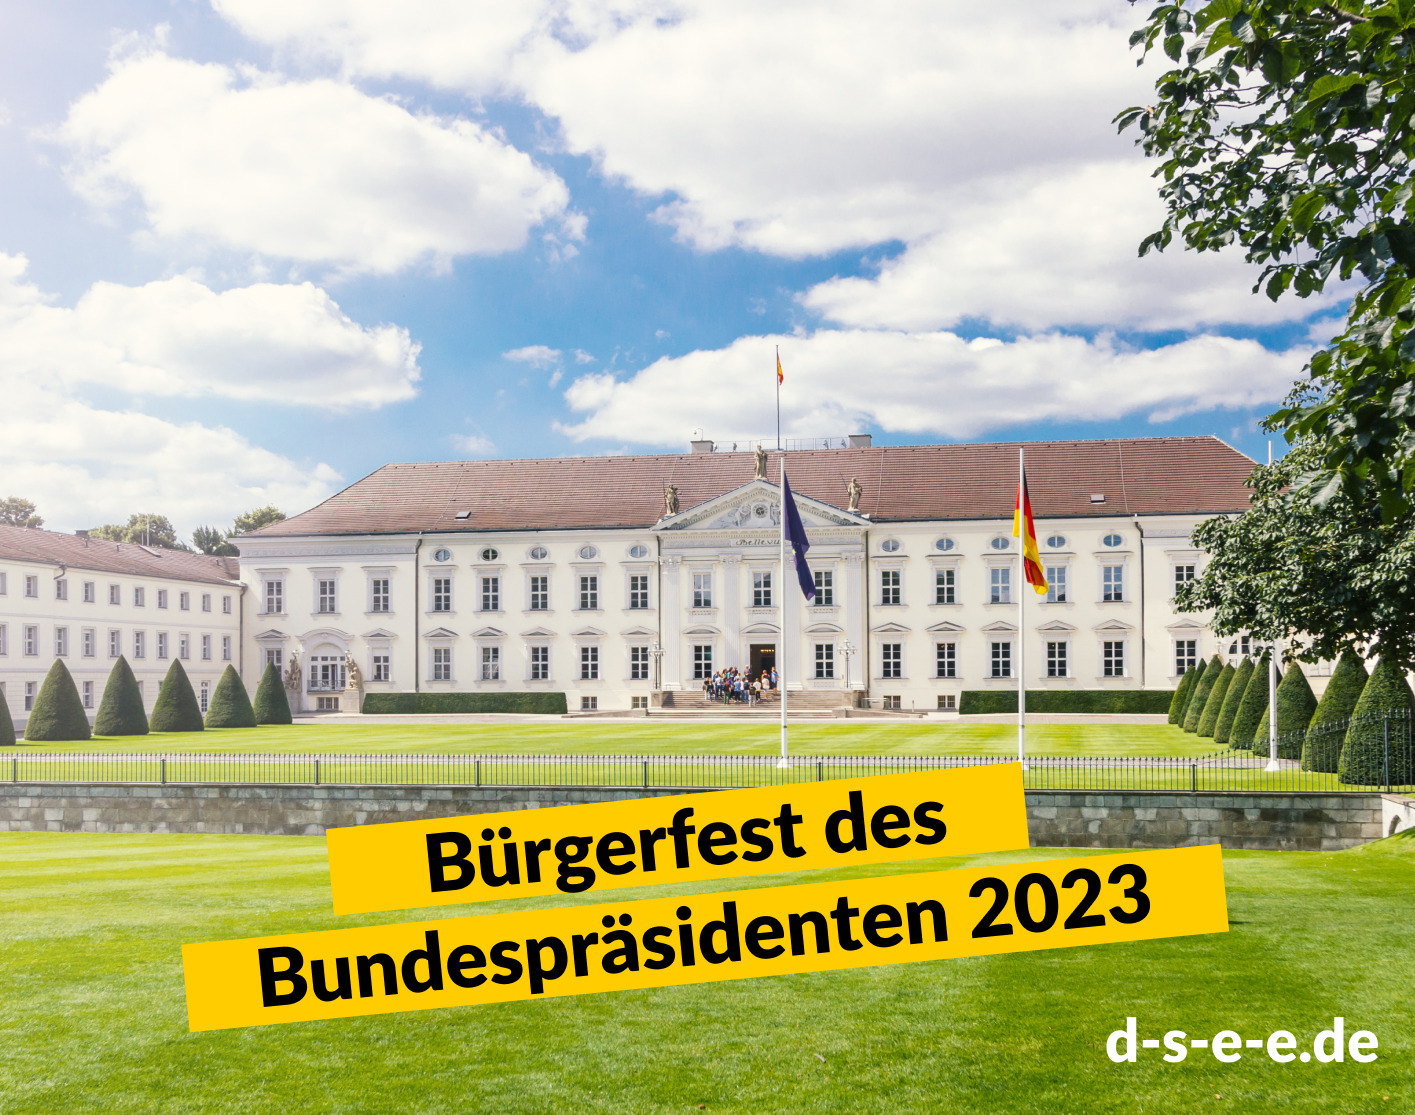 Foto von Schloss Bellevue in Berlin, Sitz des Bundespräsidenten. Text: Bürgerfest des Bundespräsidenten 2023. d-s-e-e.de